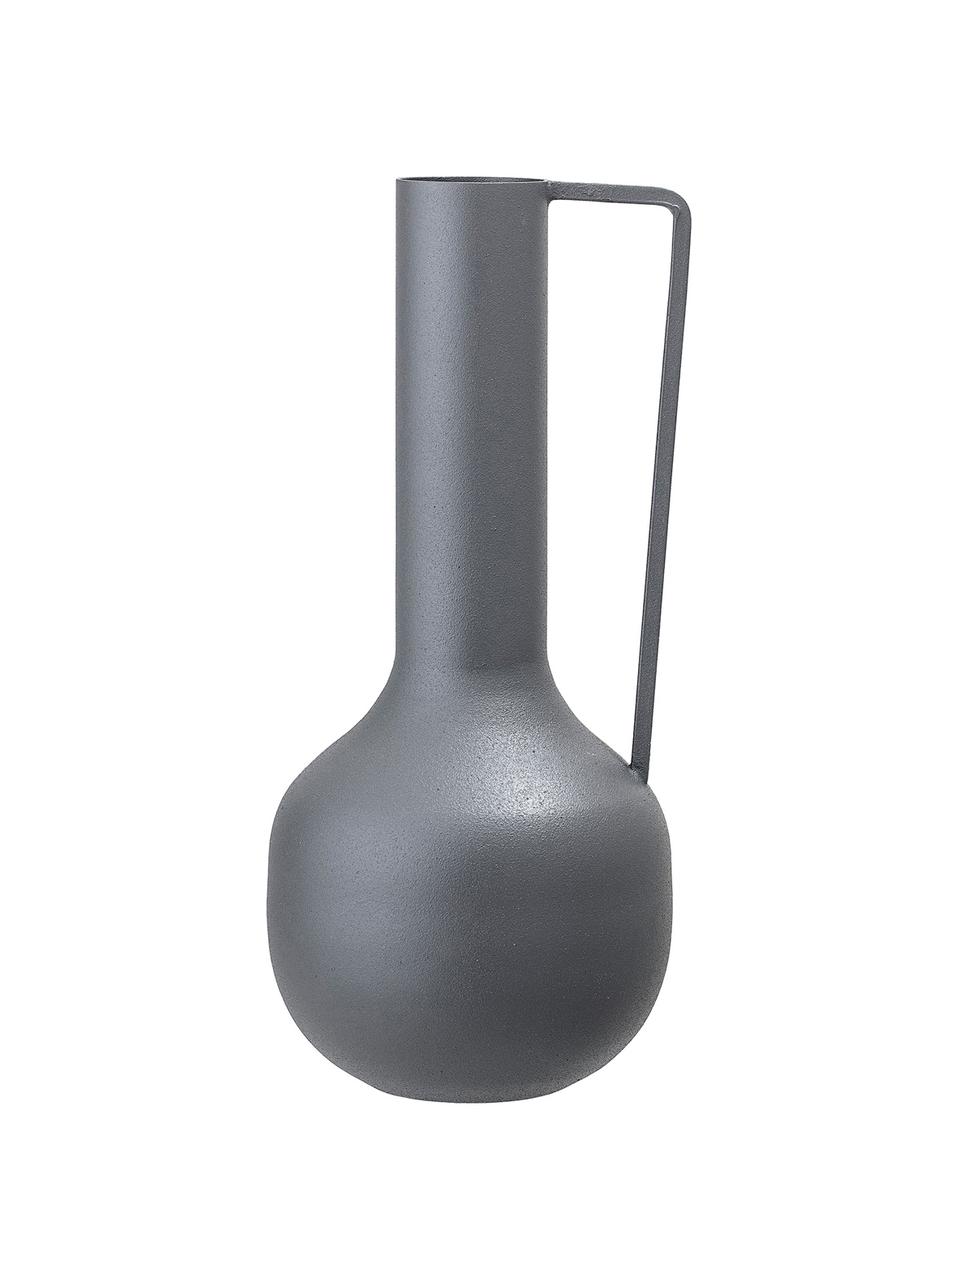 Vase Trend aus Metall, Metall, beschichtet, Grau, Ø 10 x H 25 cm